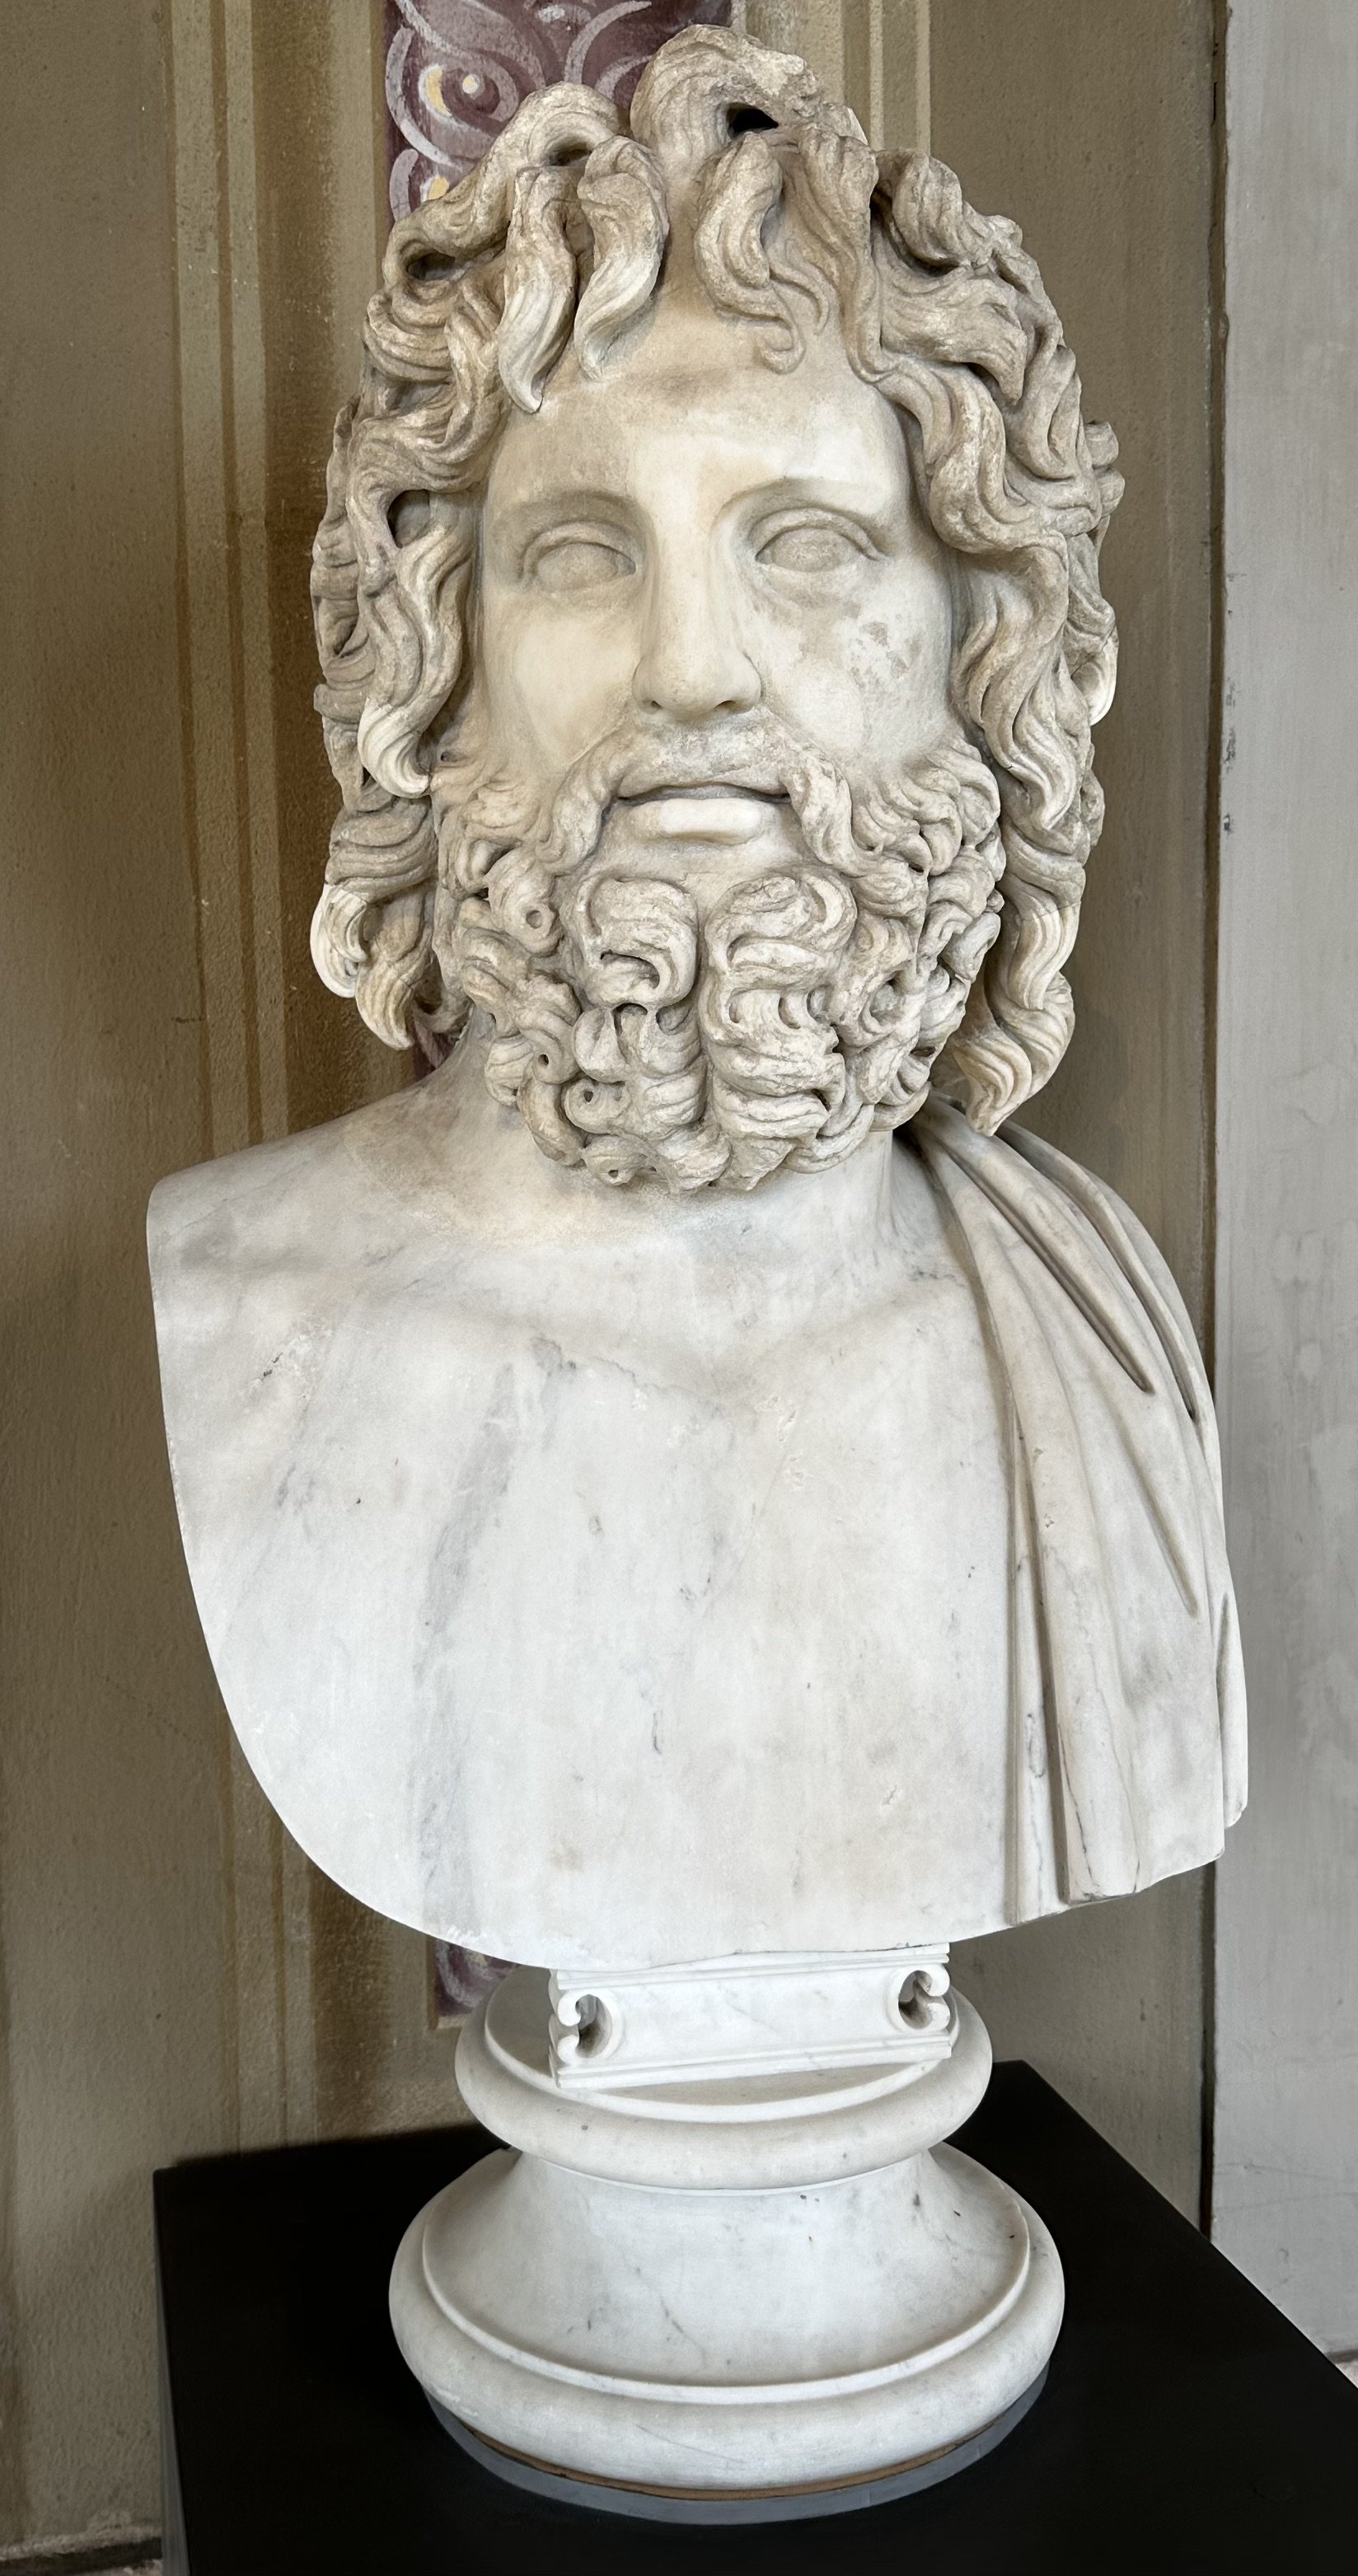 Bust of Zeus Uffizi Gallery.jpeg